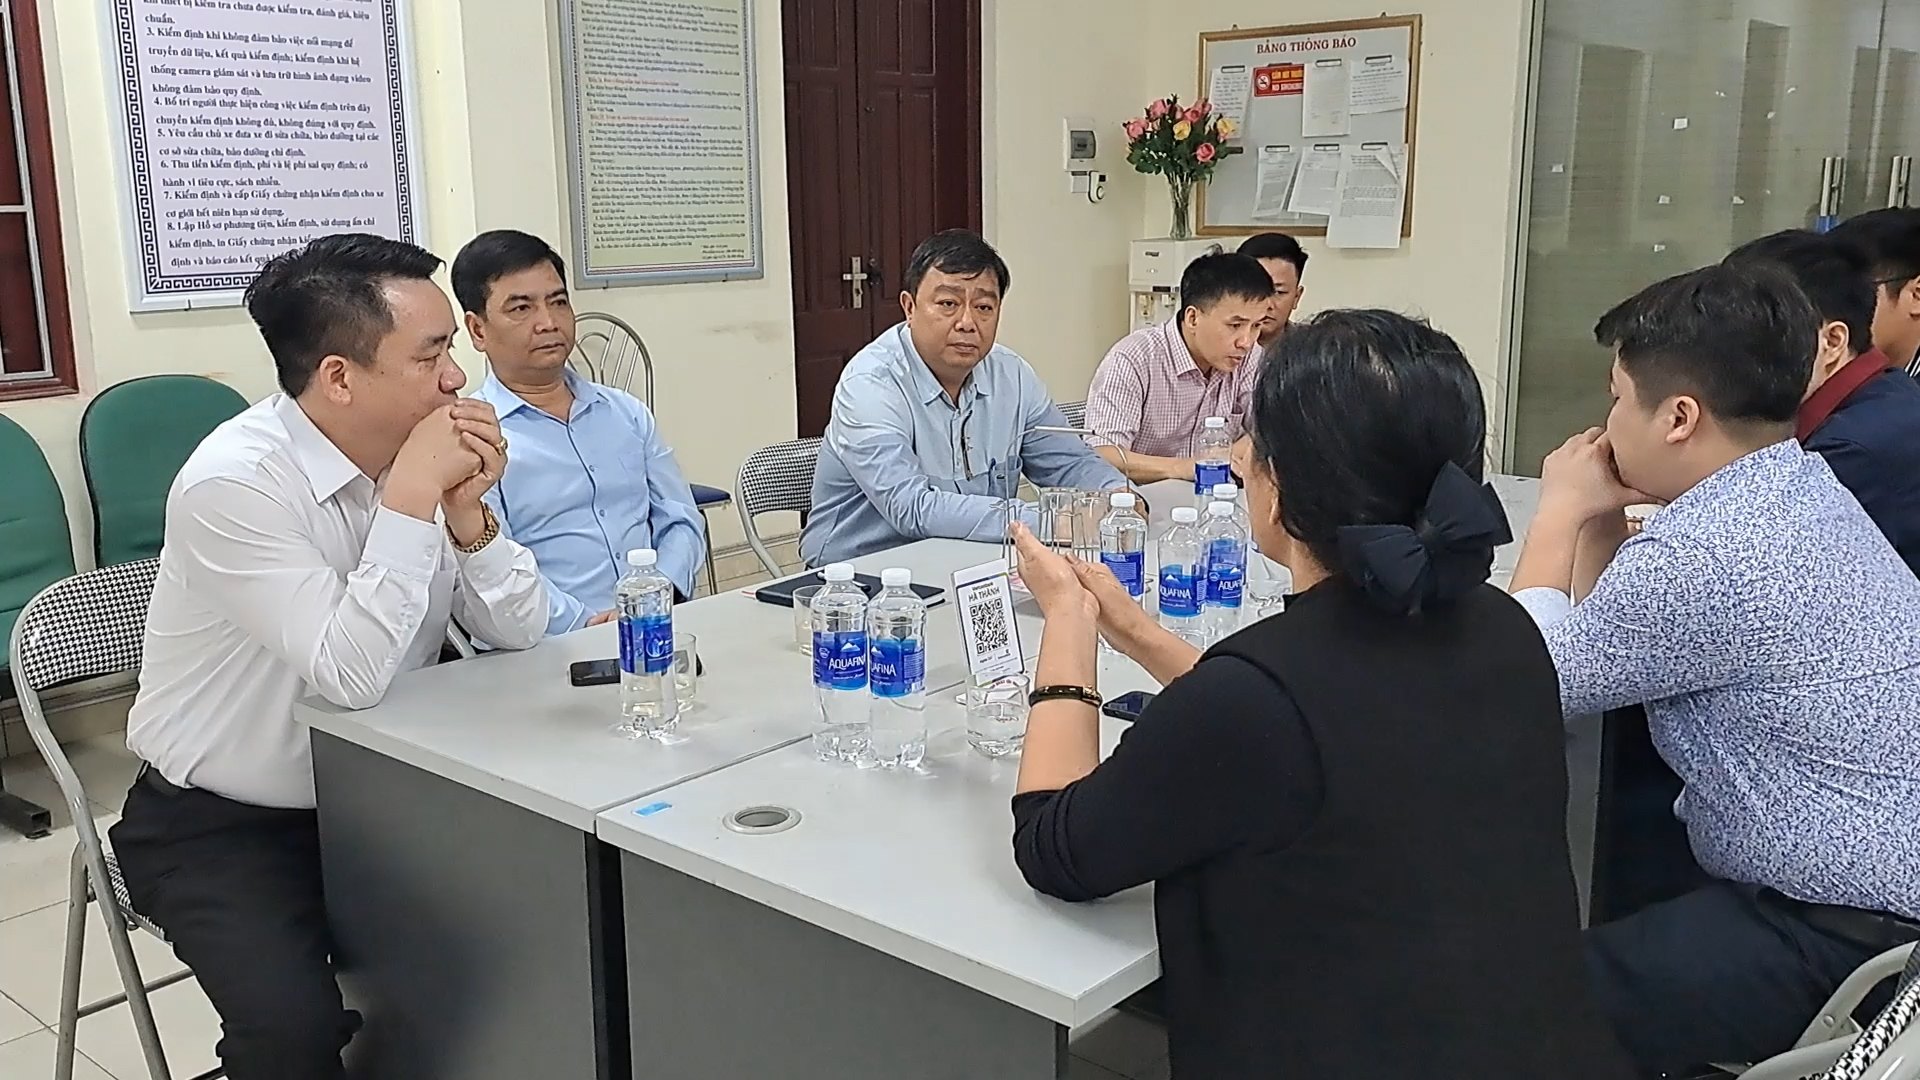 &quot;Làm luật&quot; đăng kiểm tại Bắc Ninh: Giám đốc có nghe điện thoại, không nhận tiền - Ảnh 3.